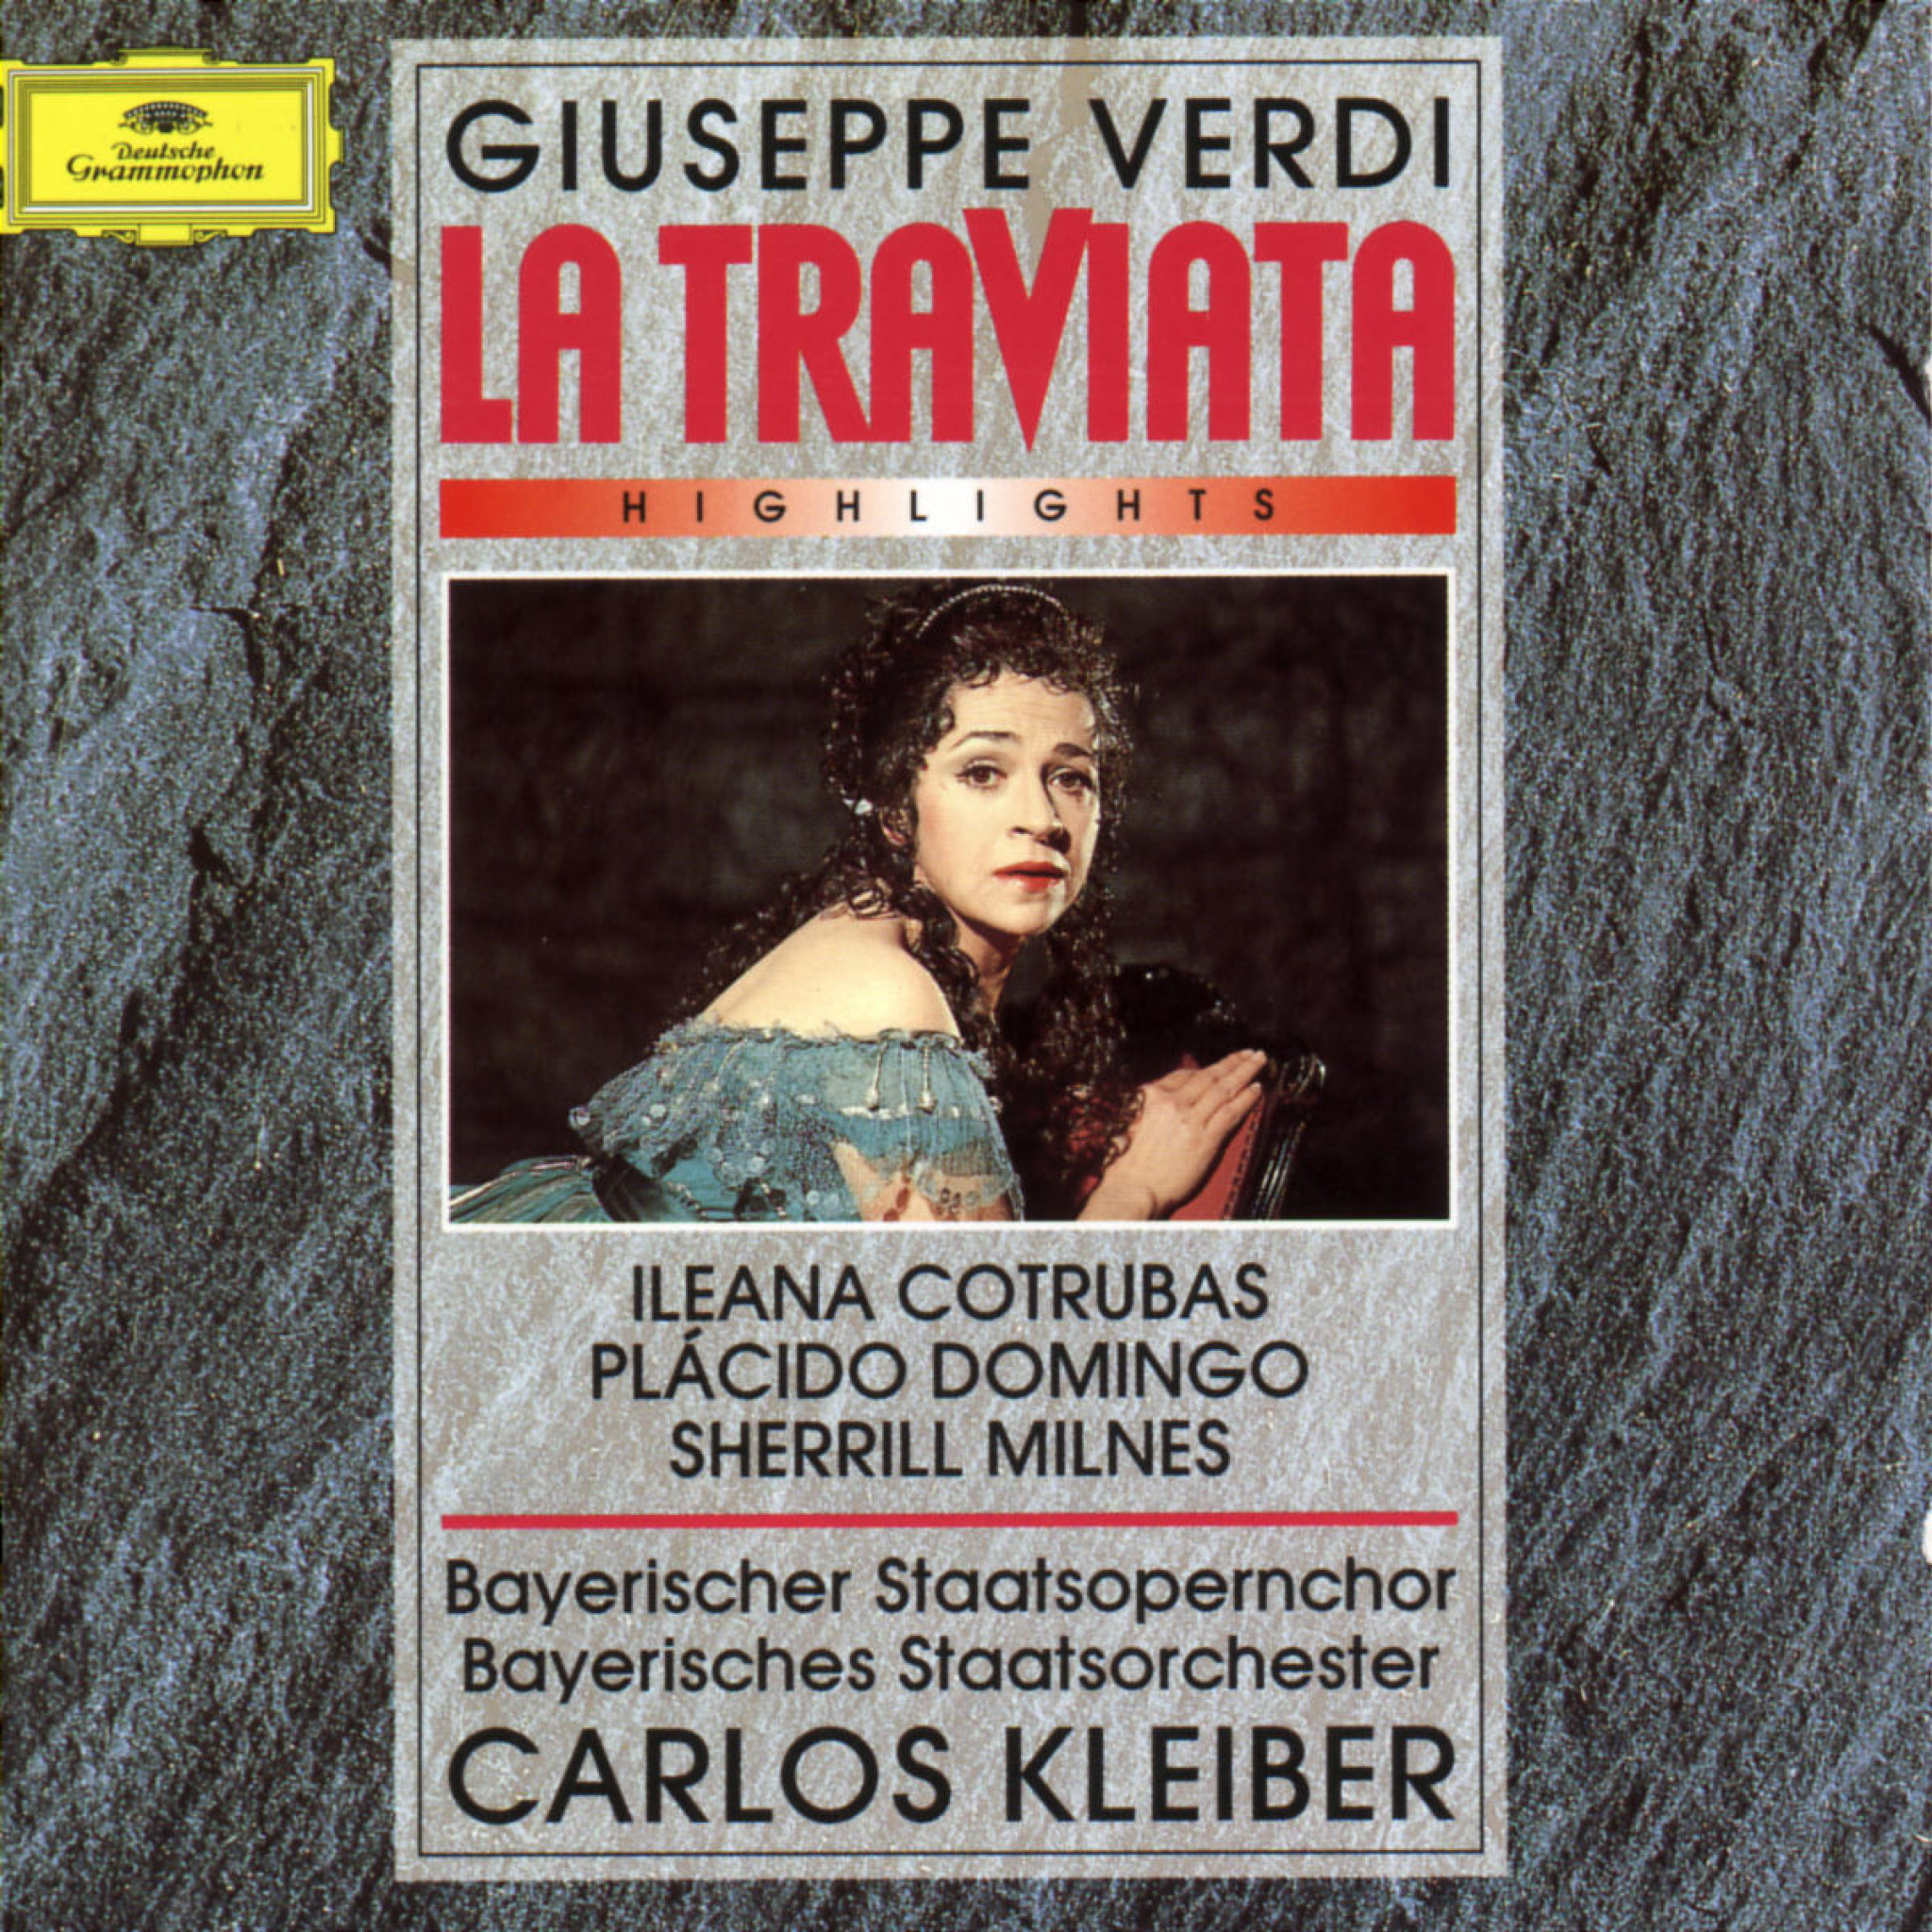 Verdi: La Traviata - Highlights 0028944546929